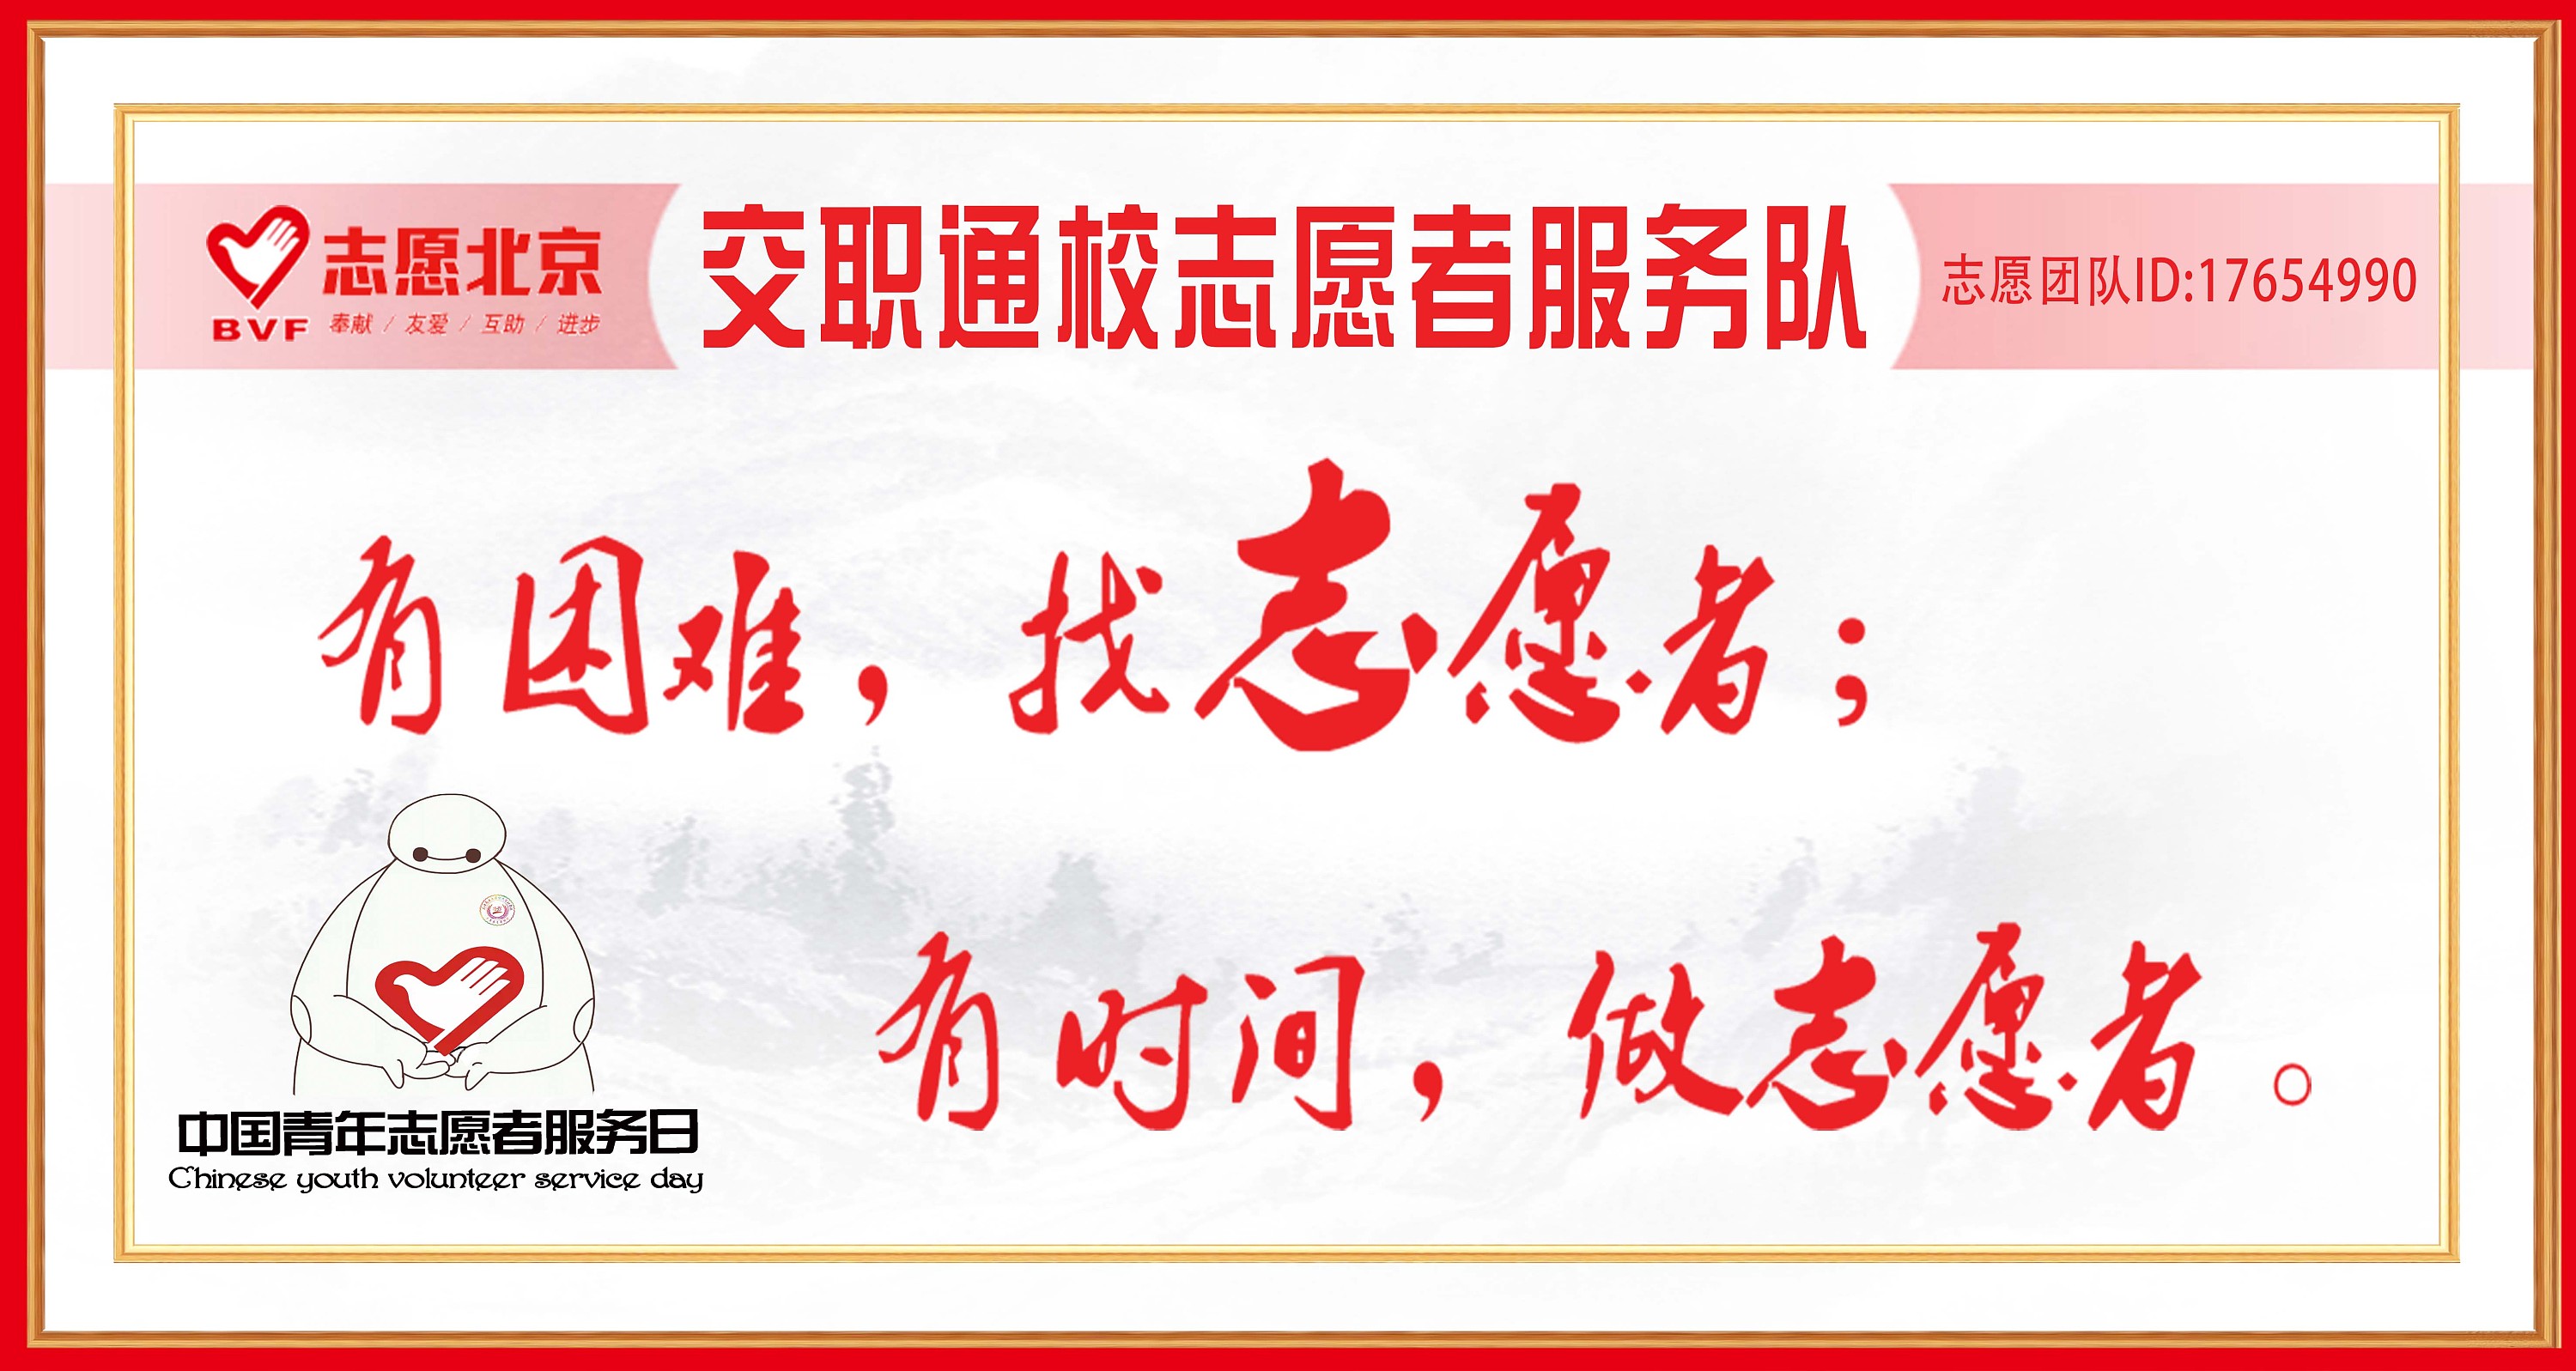 中国青年志愿者服务日海报